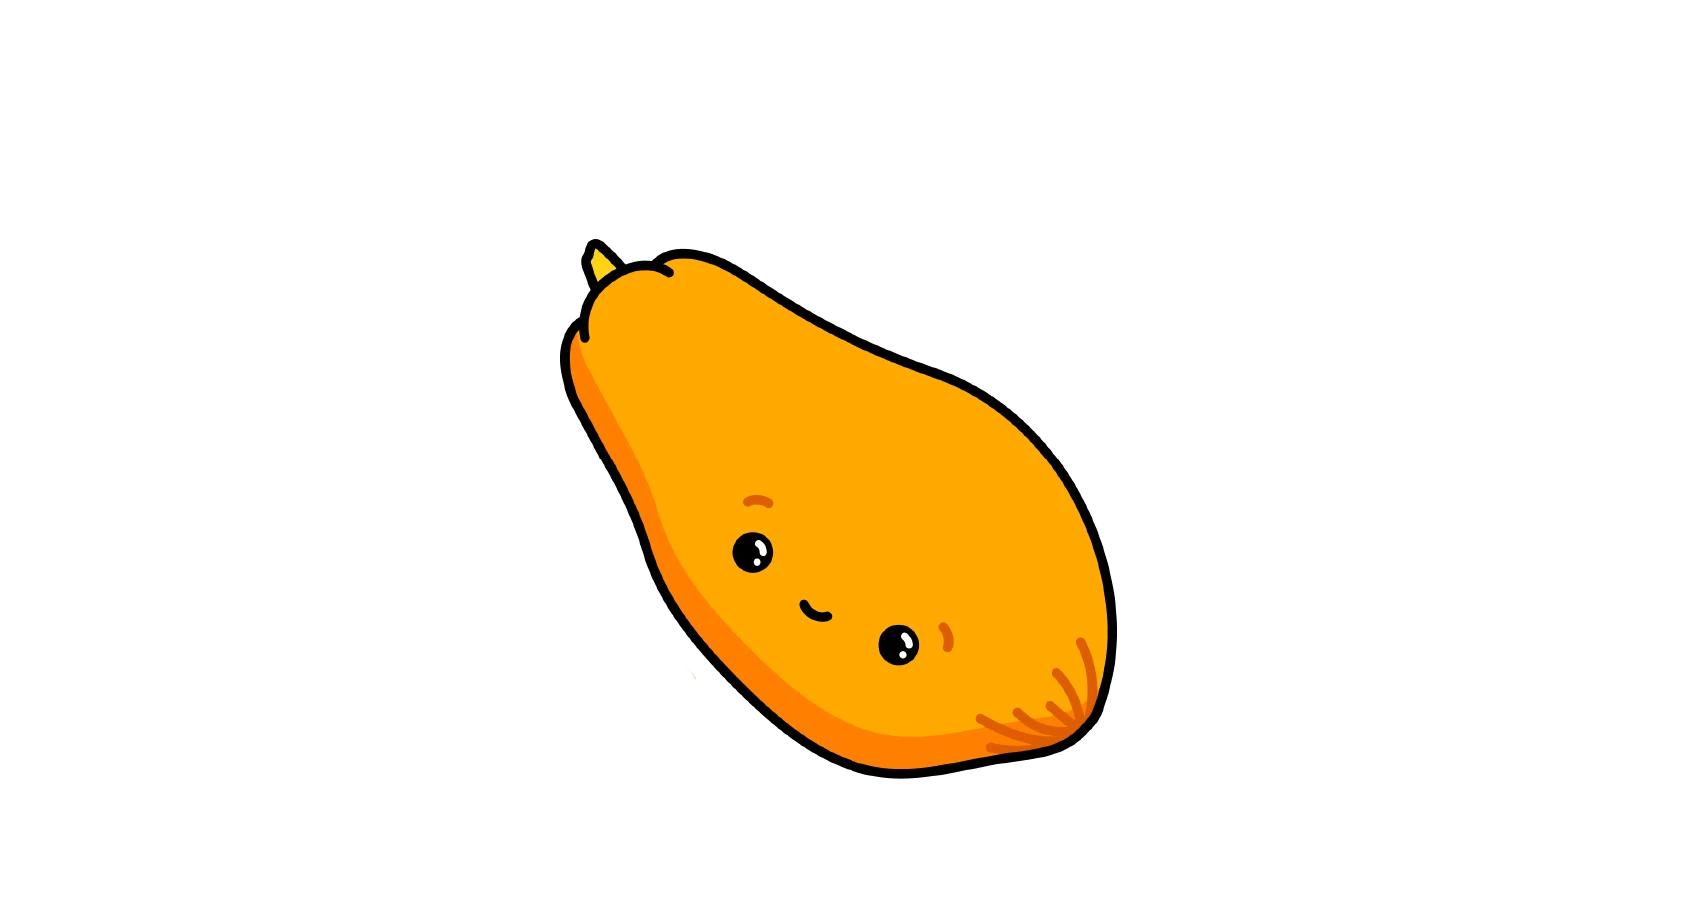  Baby size:Papaya